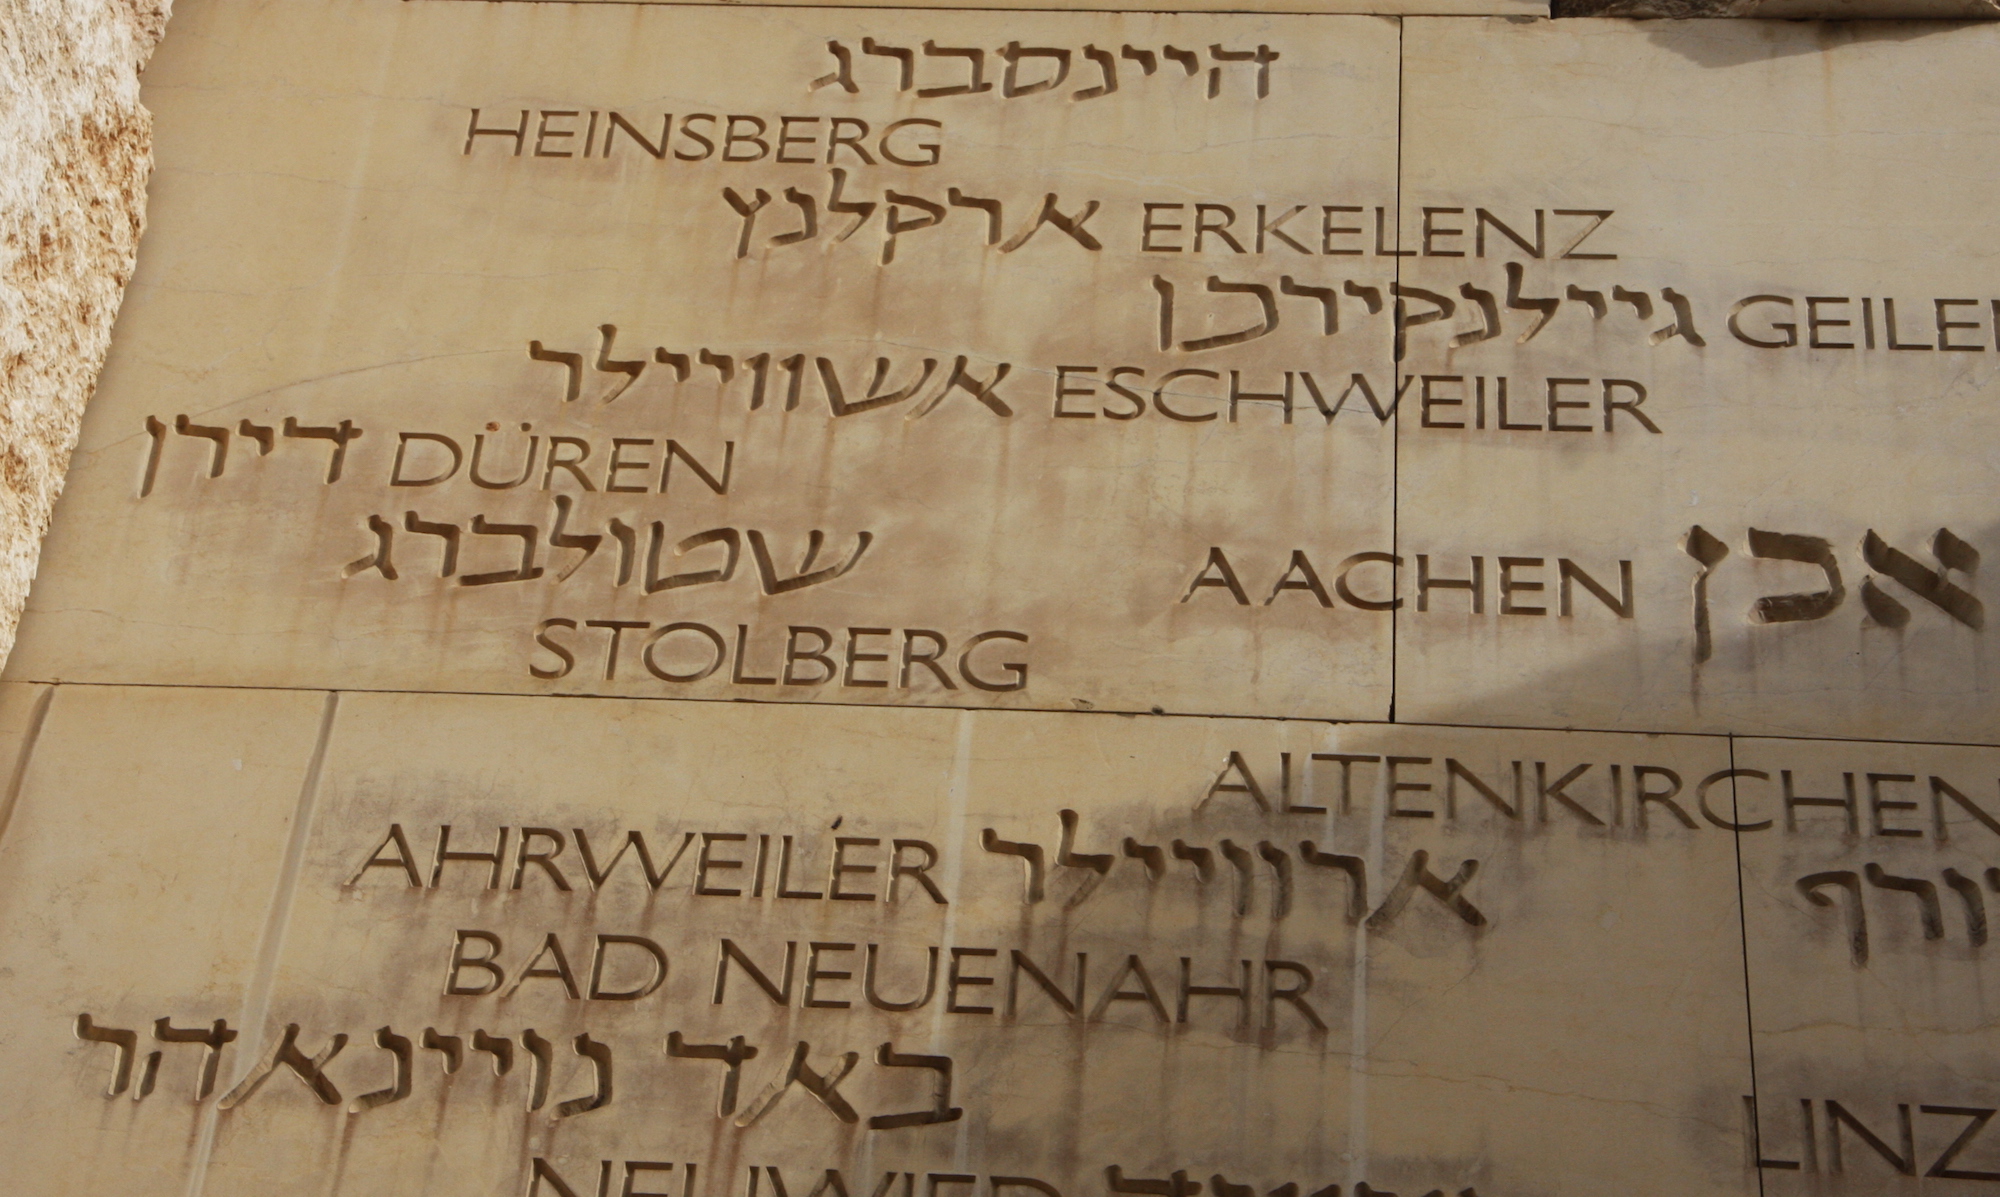 Das Tal der Gemeinden in Yad Vashem erinnert an 5000 jüdische Gemeinden, die im Holocaust zerstört wurden oder nur knapp überlebten.